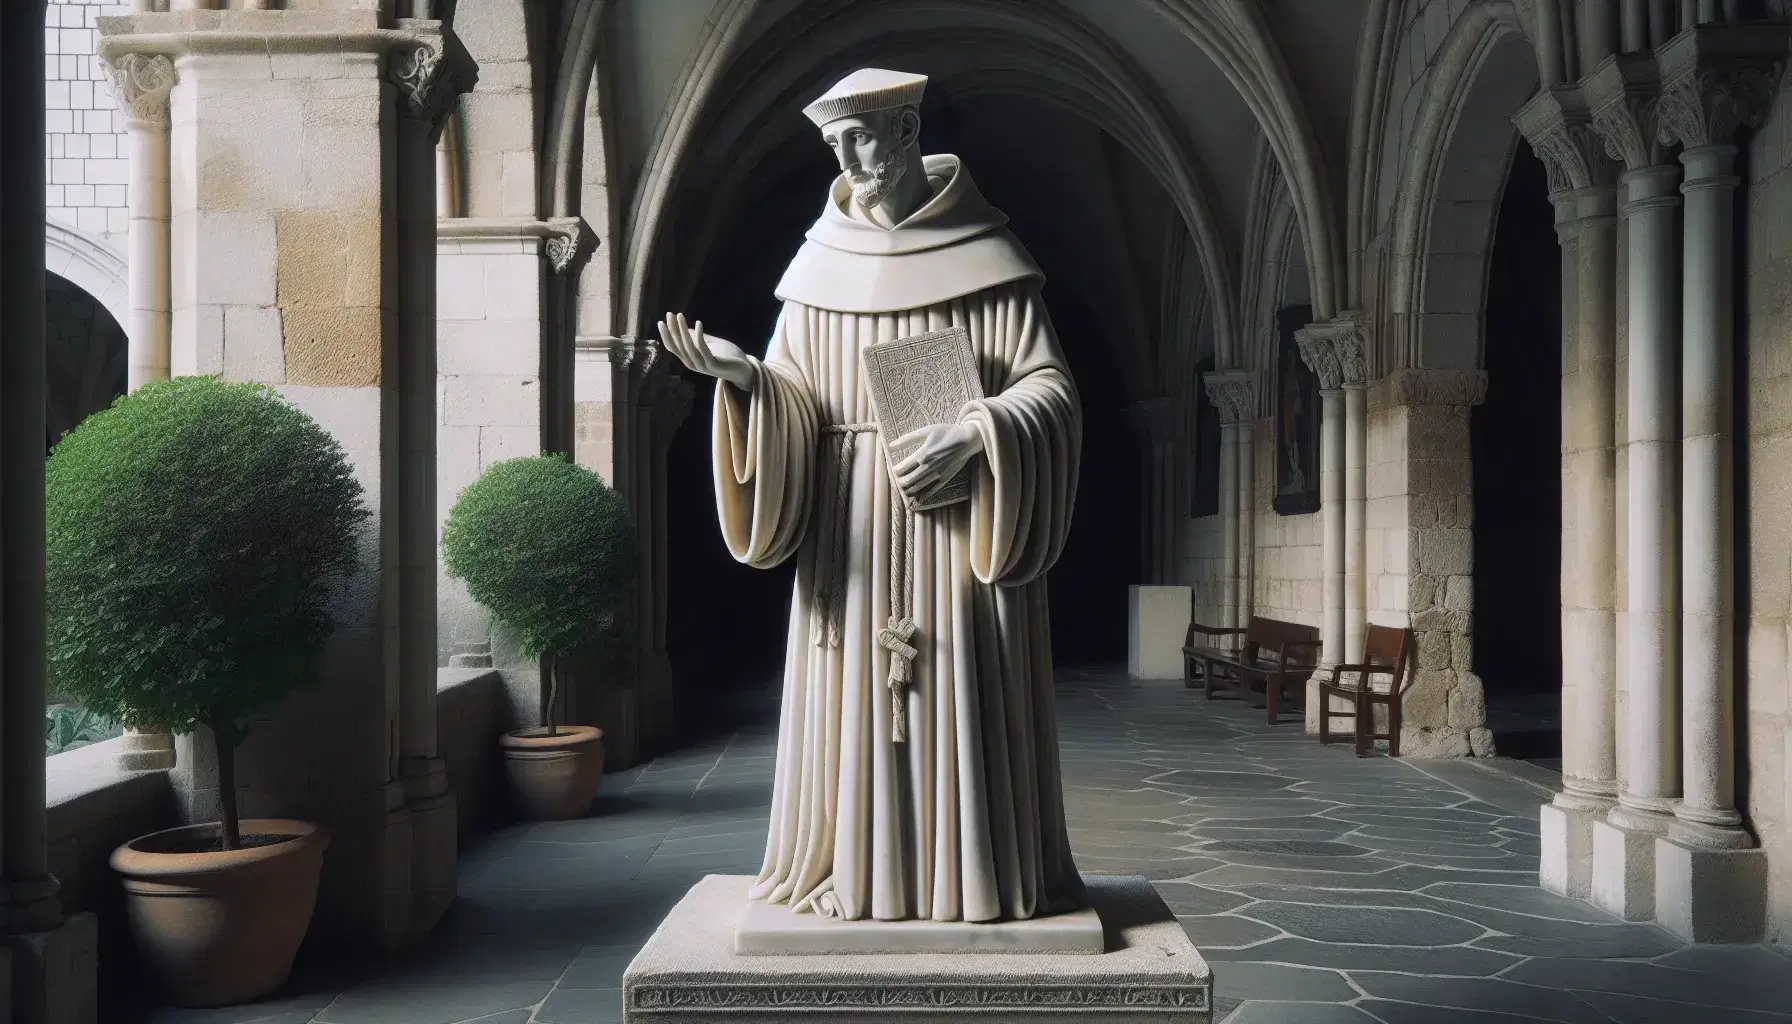 Estatua de mármol blanco de filósofo medieval en hábito dominico, con una mano extendida y la otra sosteniendo un libro, en un claustro antiguo iluminado naturalmente.